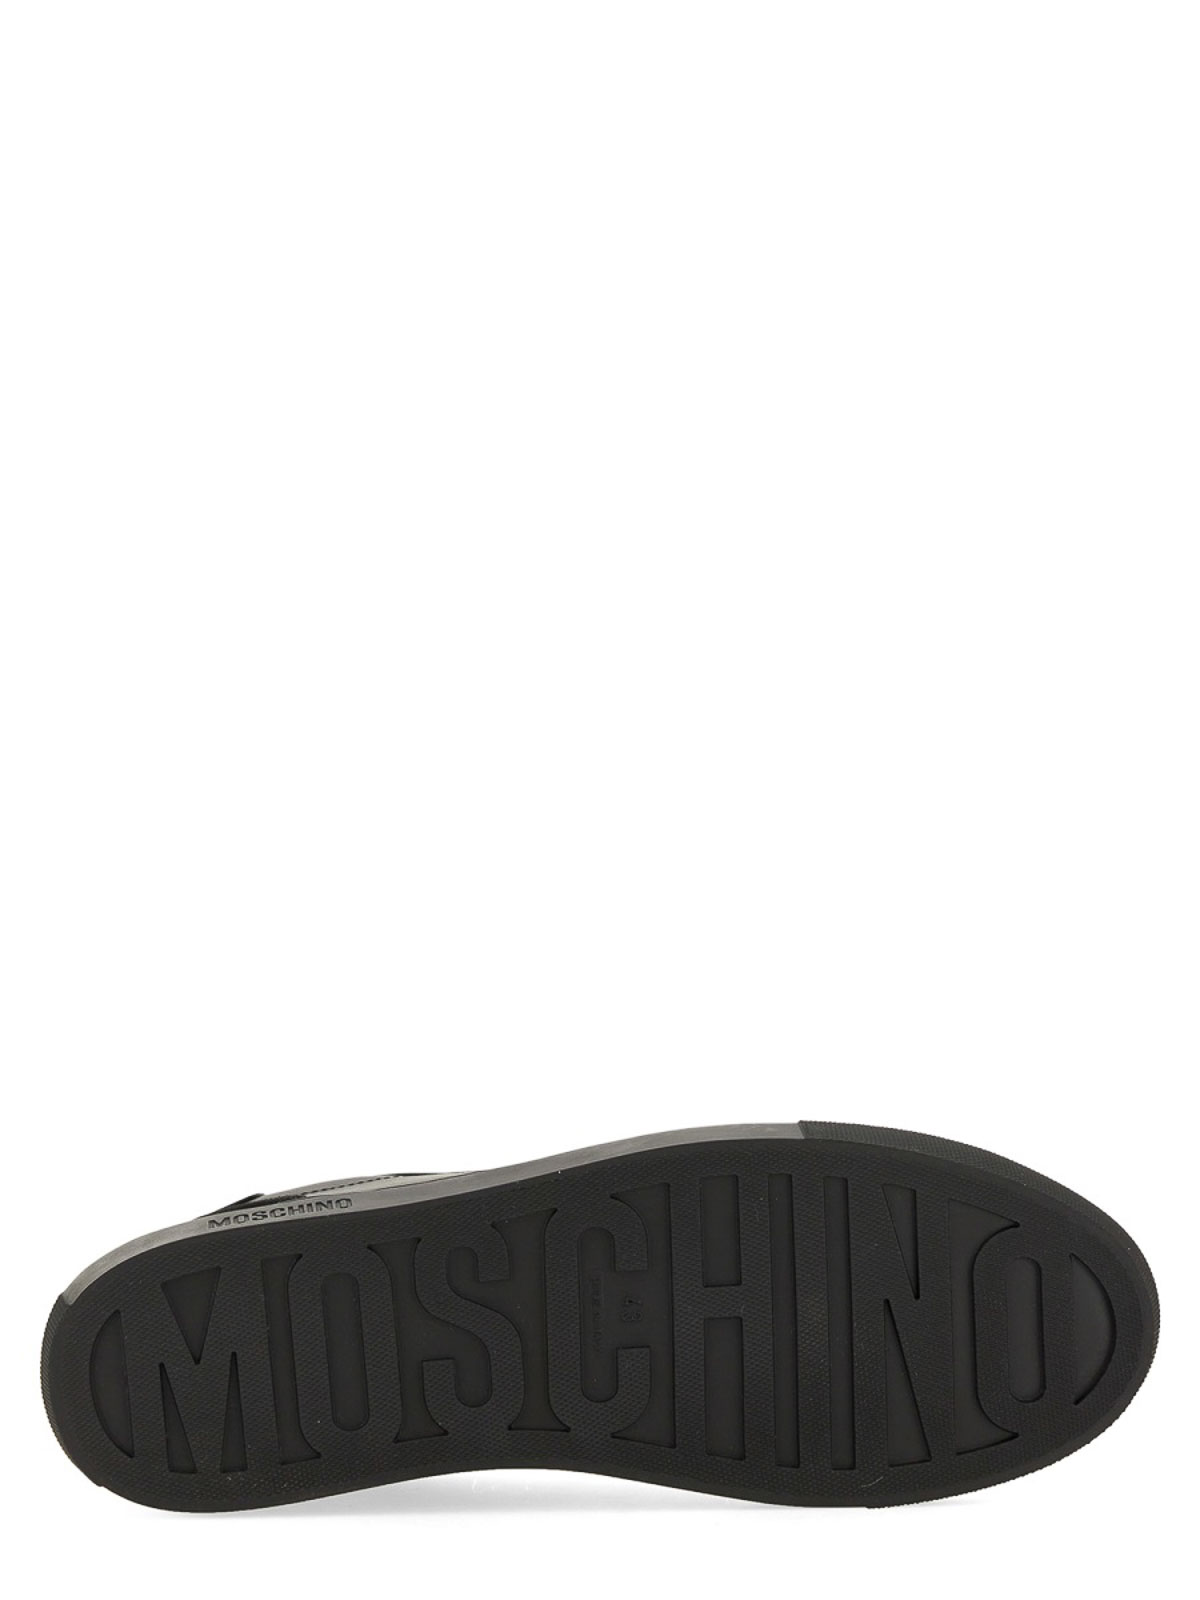 Shop Moschino Zapatillas - Negro In Black